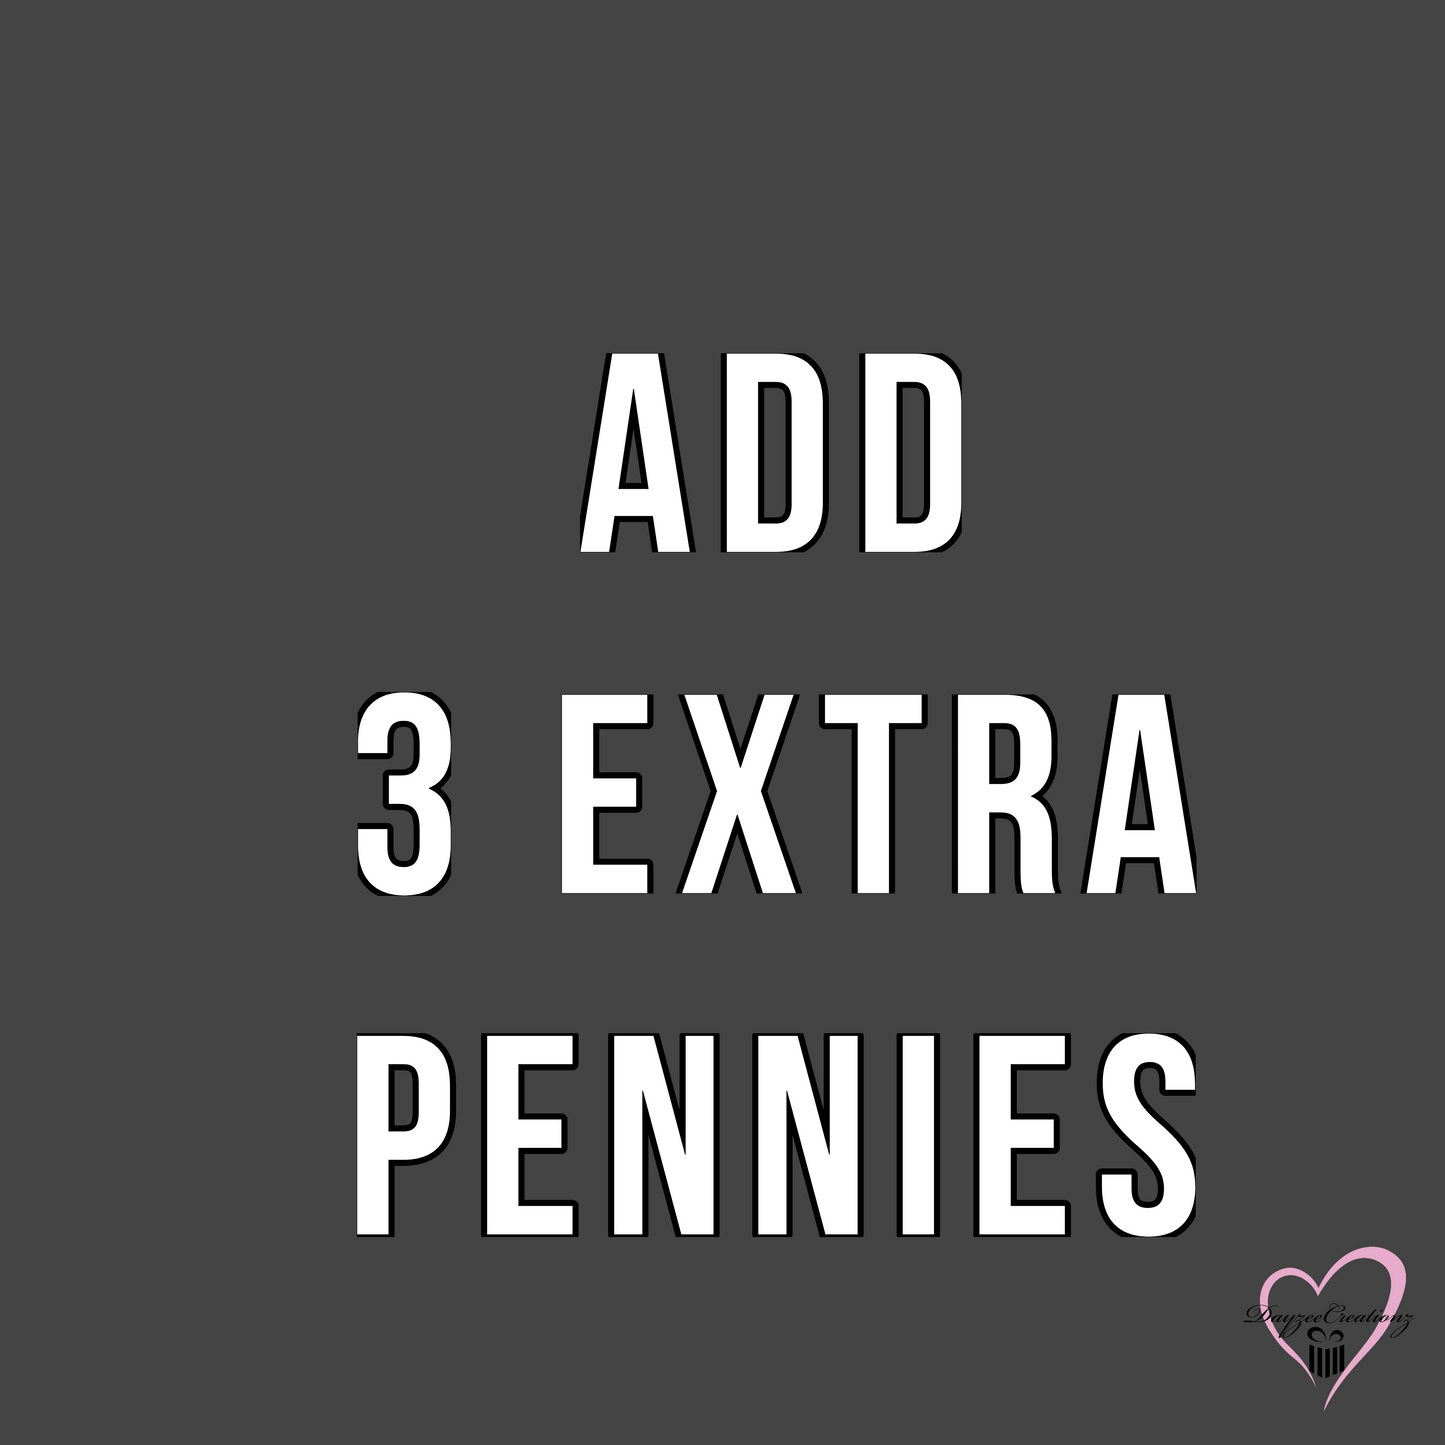 Add Penny